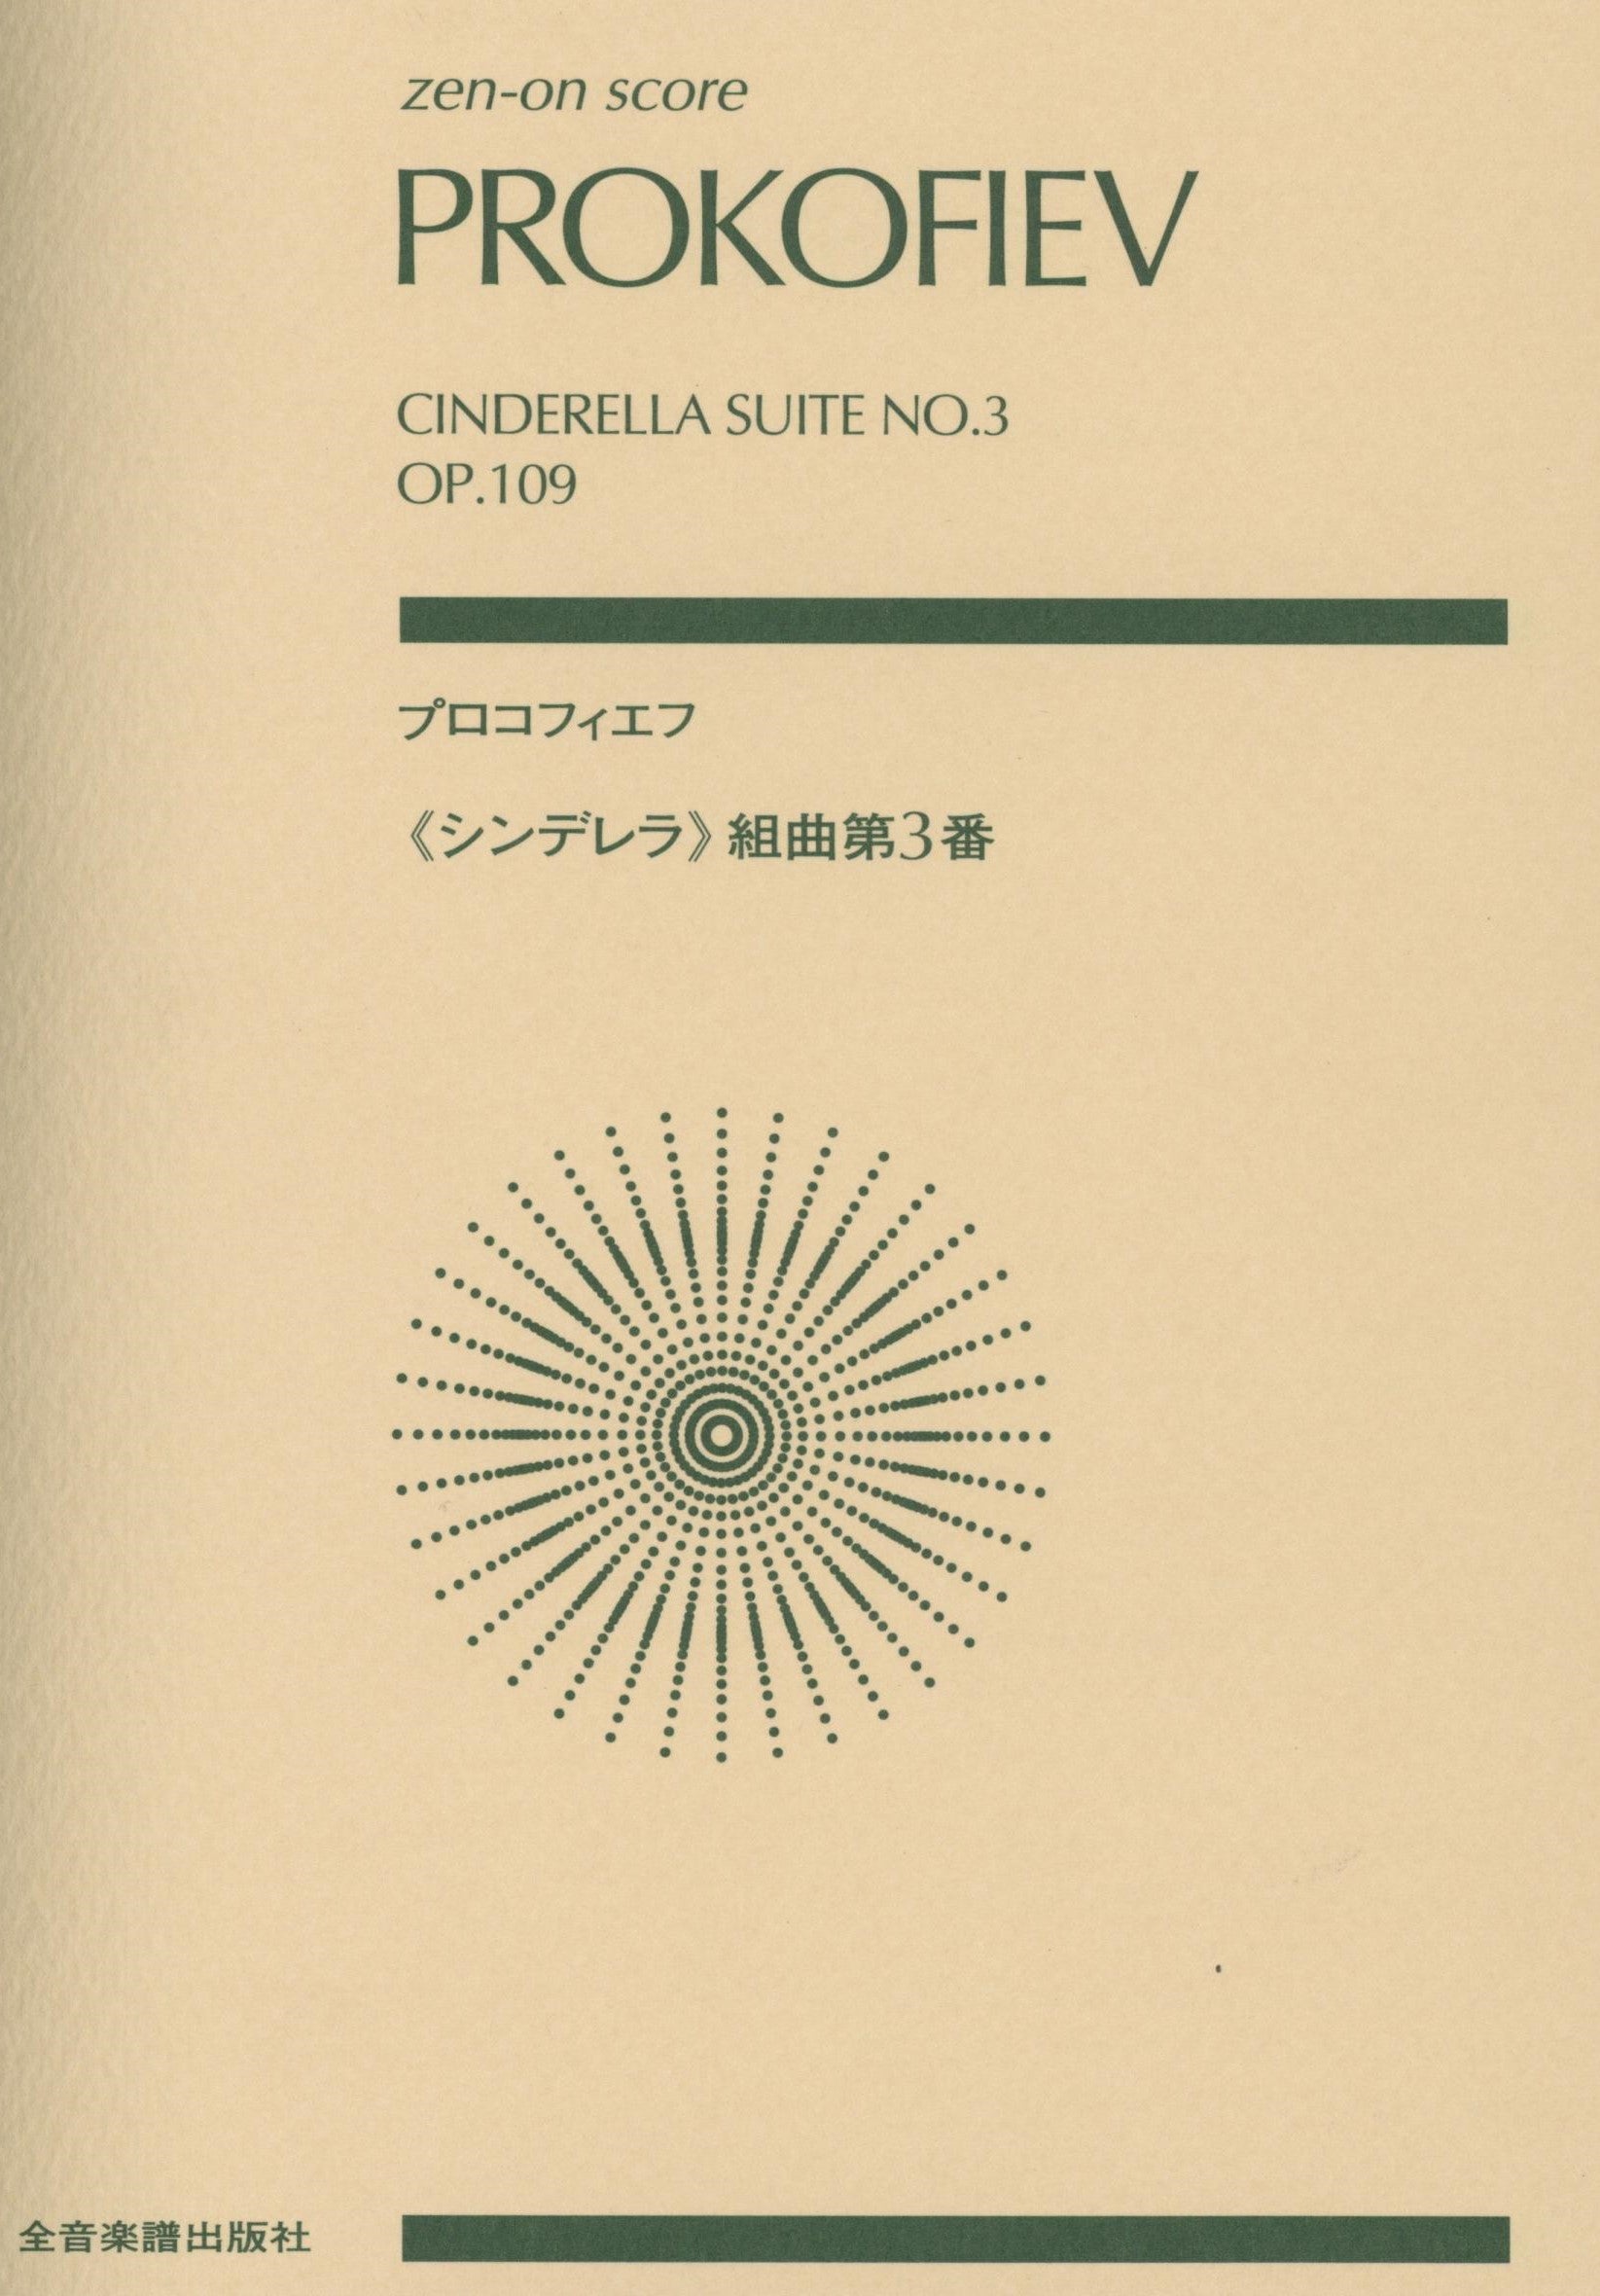 Prokofiev: Cindererlla Suite No. 3, Op. 109